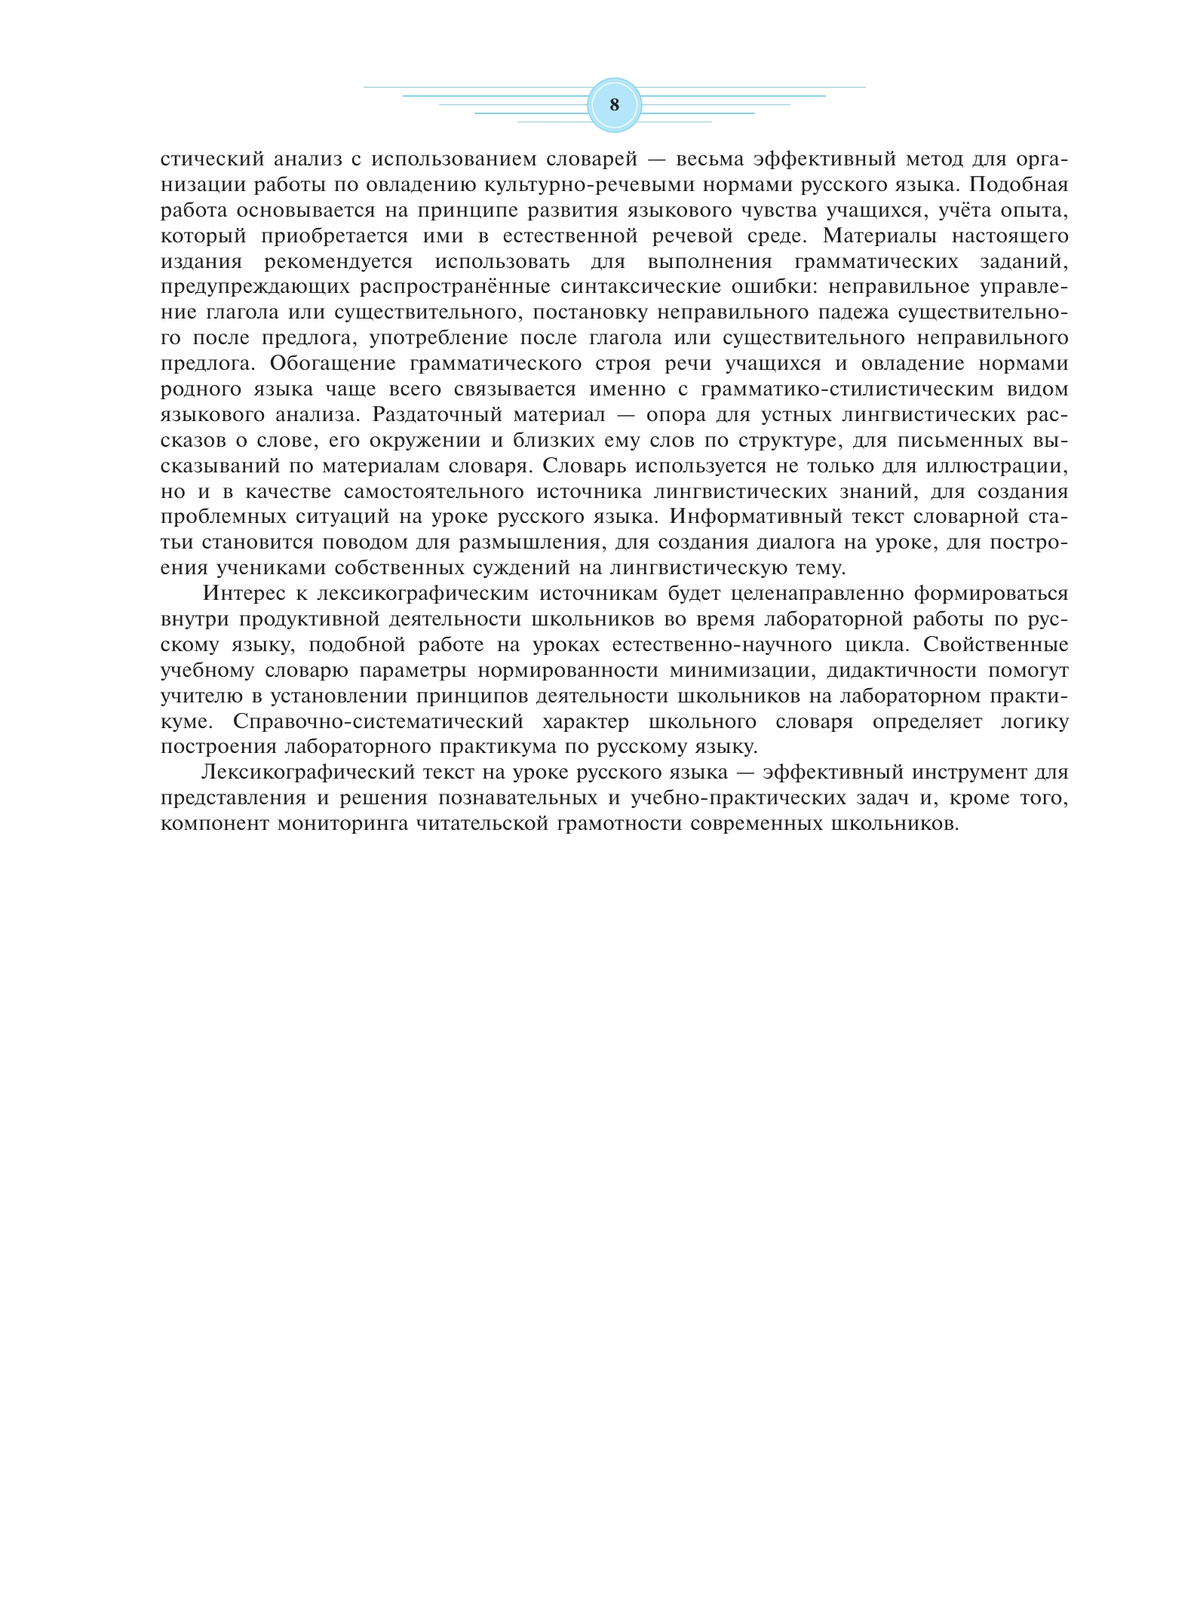 Универсальный словарь русского языка для школьников: более 5000 словарных статей 8